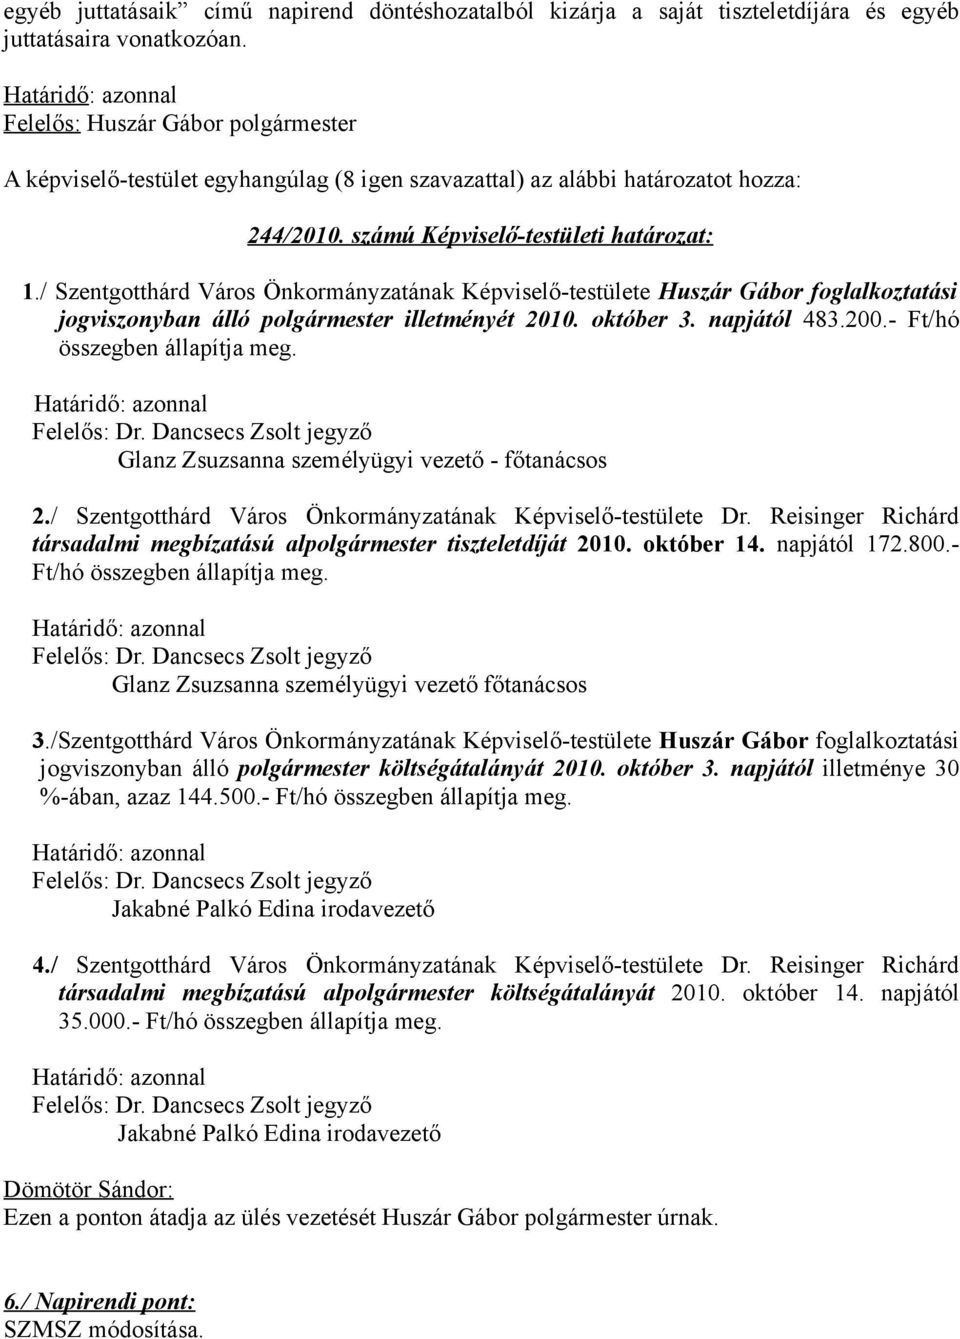 / Szentgotthárd Város Önkormányzatának Képviselő-testülete Huszár Gábor foglalkoztatási jogviszonyban álló polgármester illetményét 2010. október 3. napjától 483.200.- Ft/hó összegben állapítja meg.